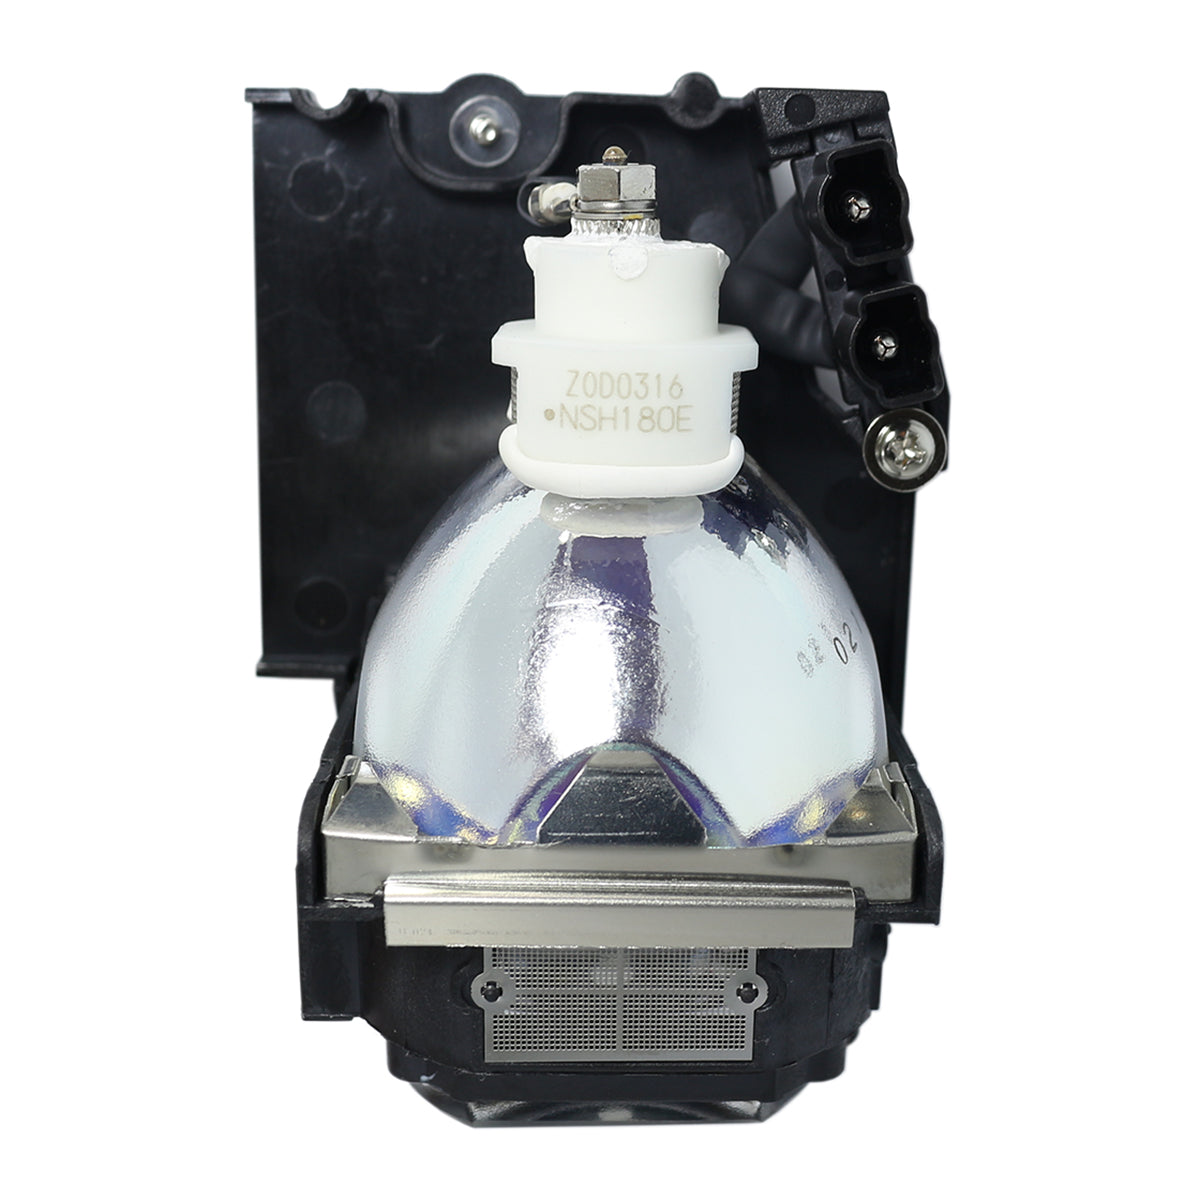 Dukane 456-8763 Ushio Projector Lamp Module